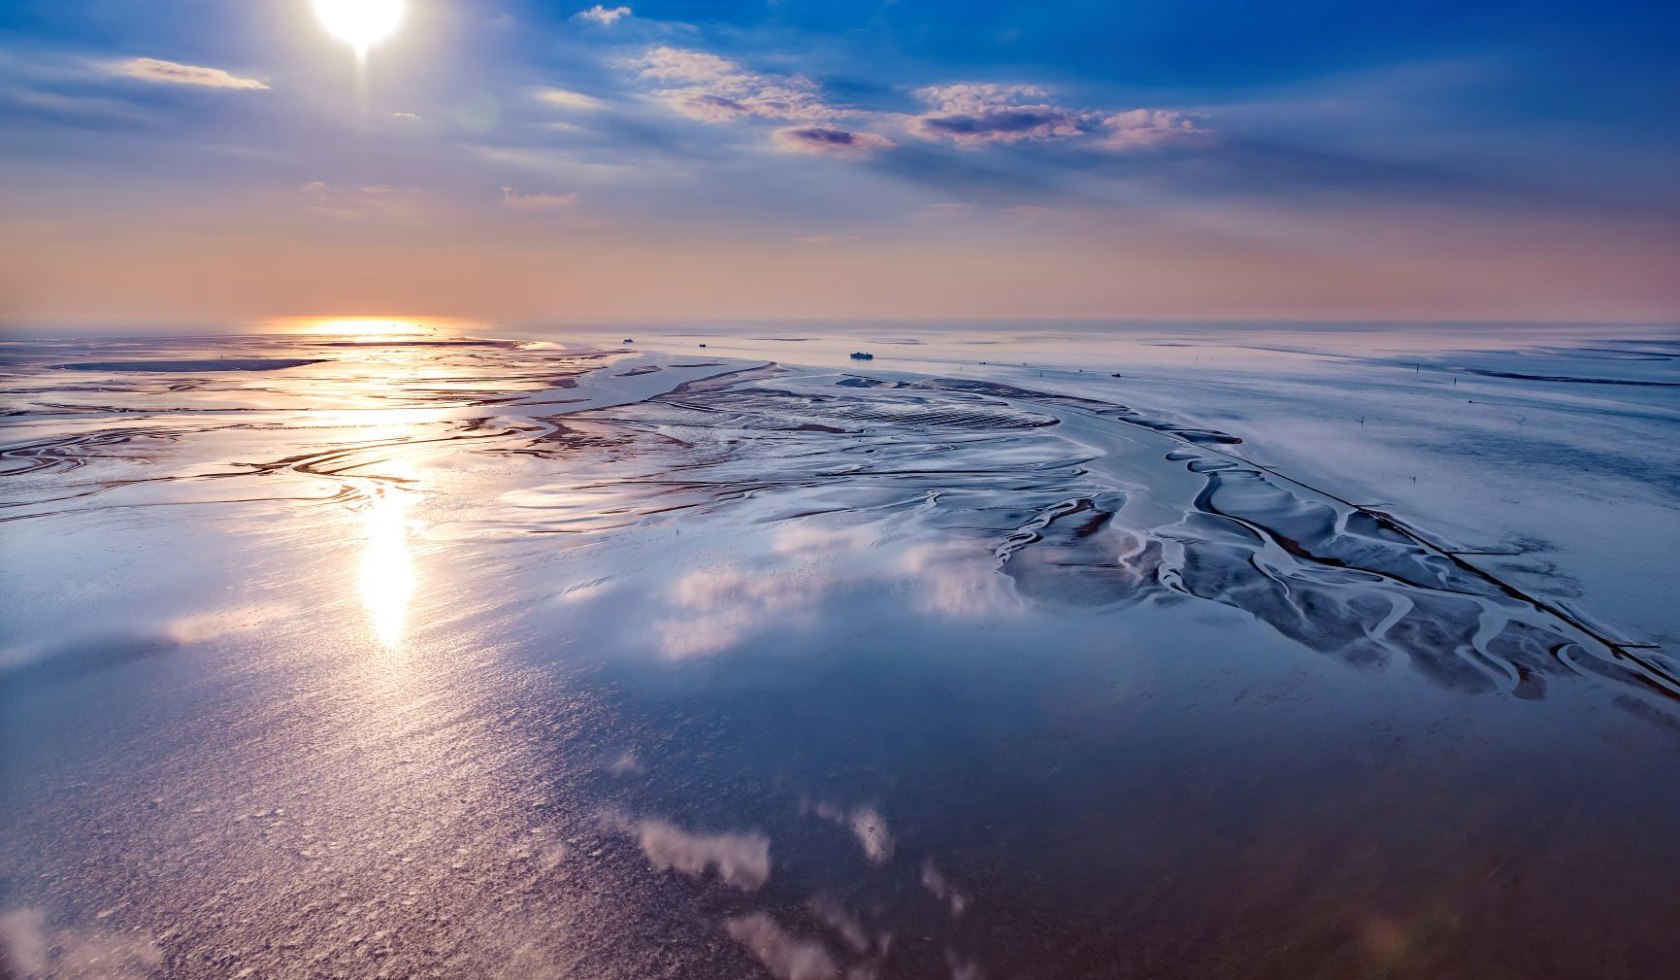 Verdens naturarv Vadehavet Cuxhaven luftfoto, © Martin Elsen